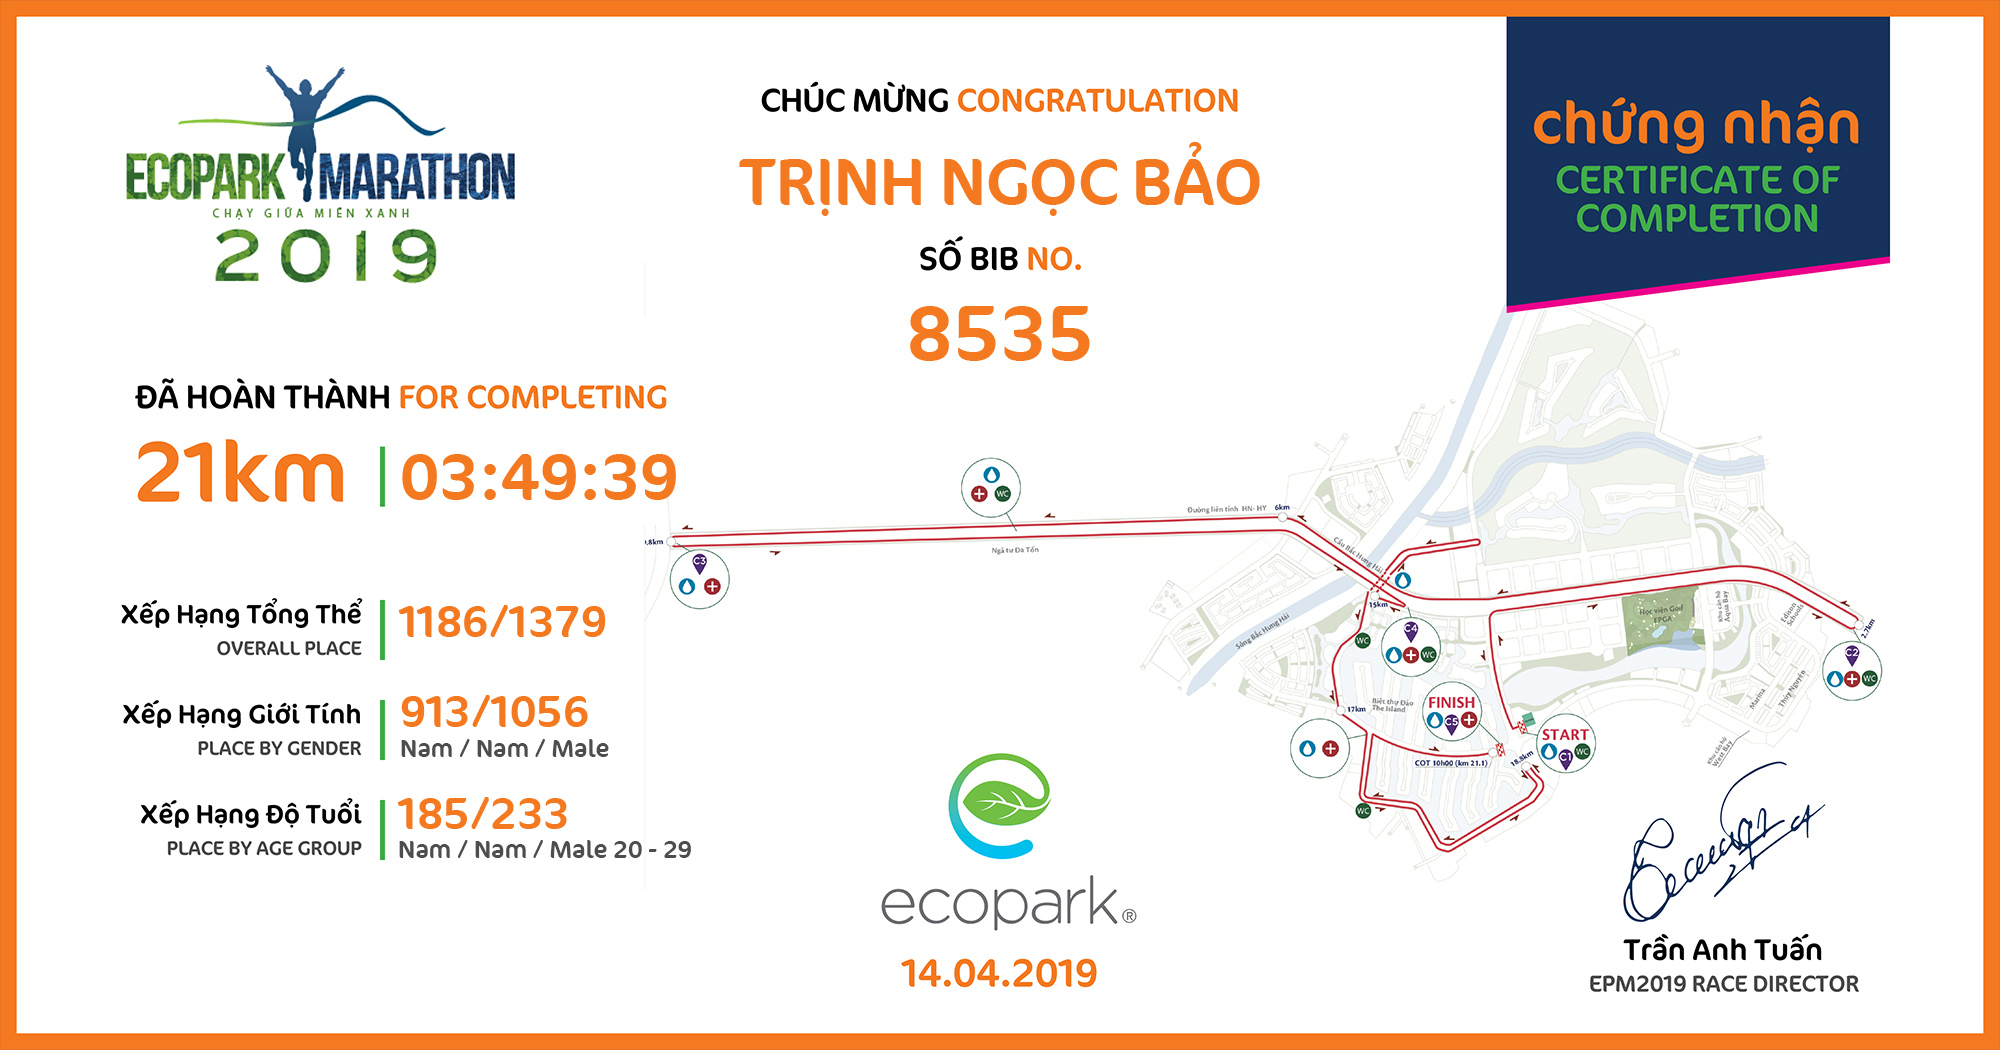 8535 - Trịnh Ngọc Bảo